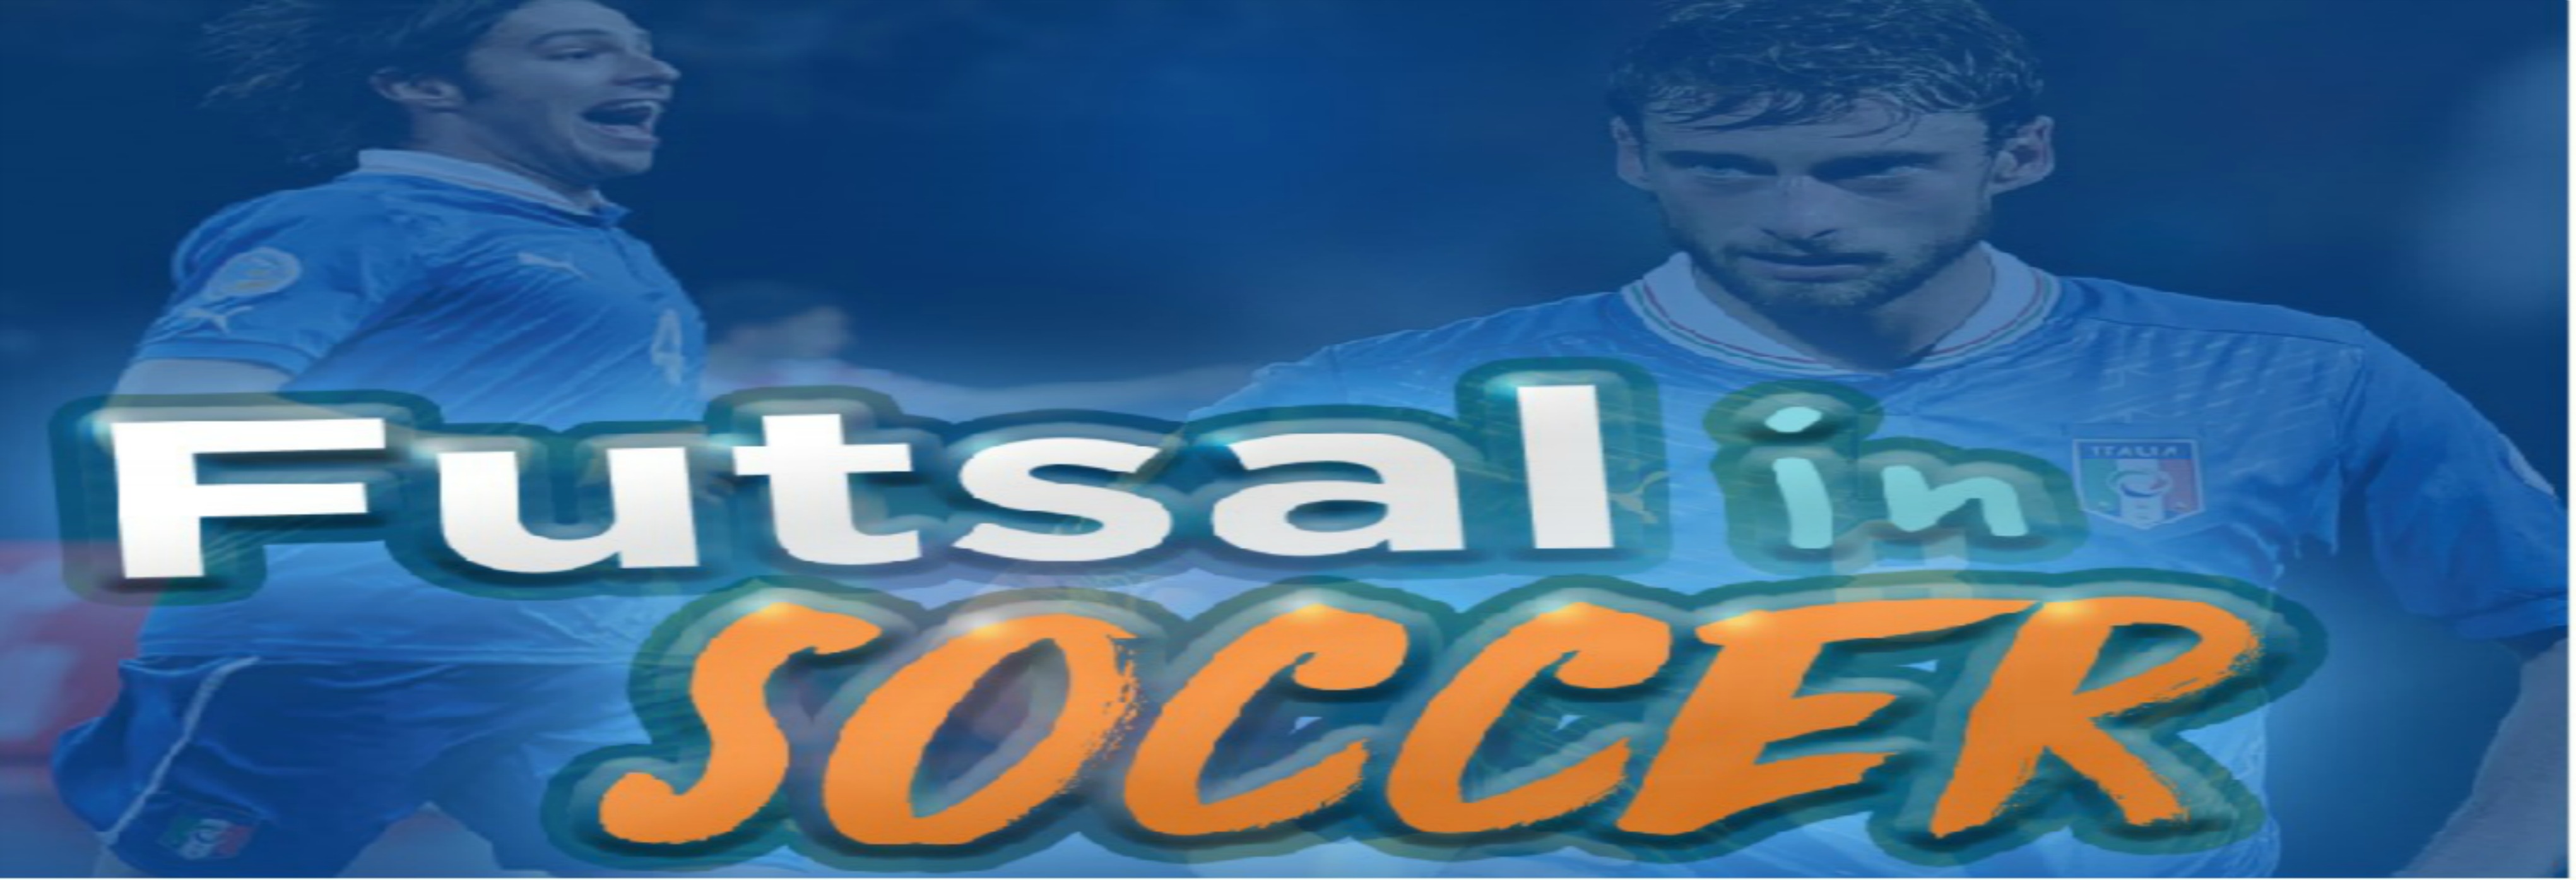 Futsal-soccer